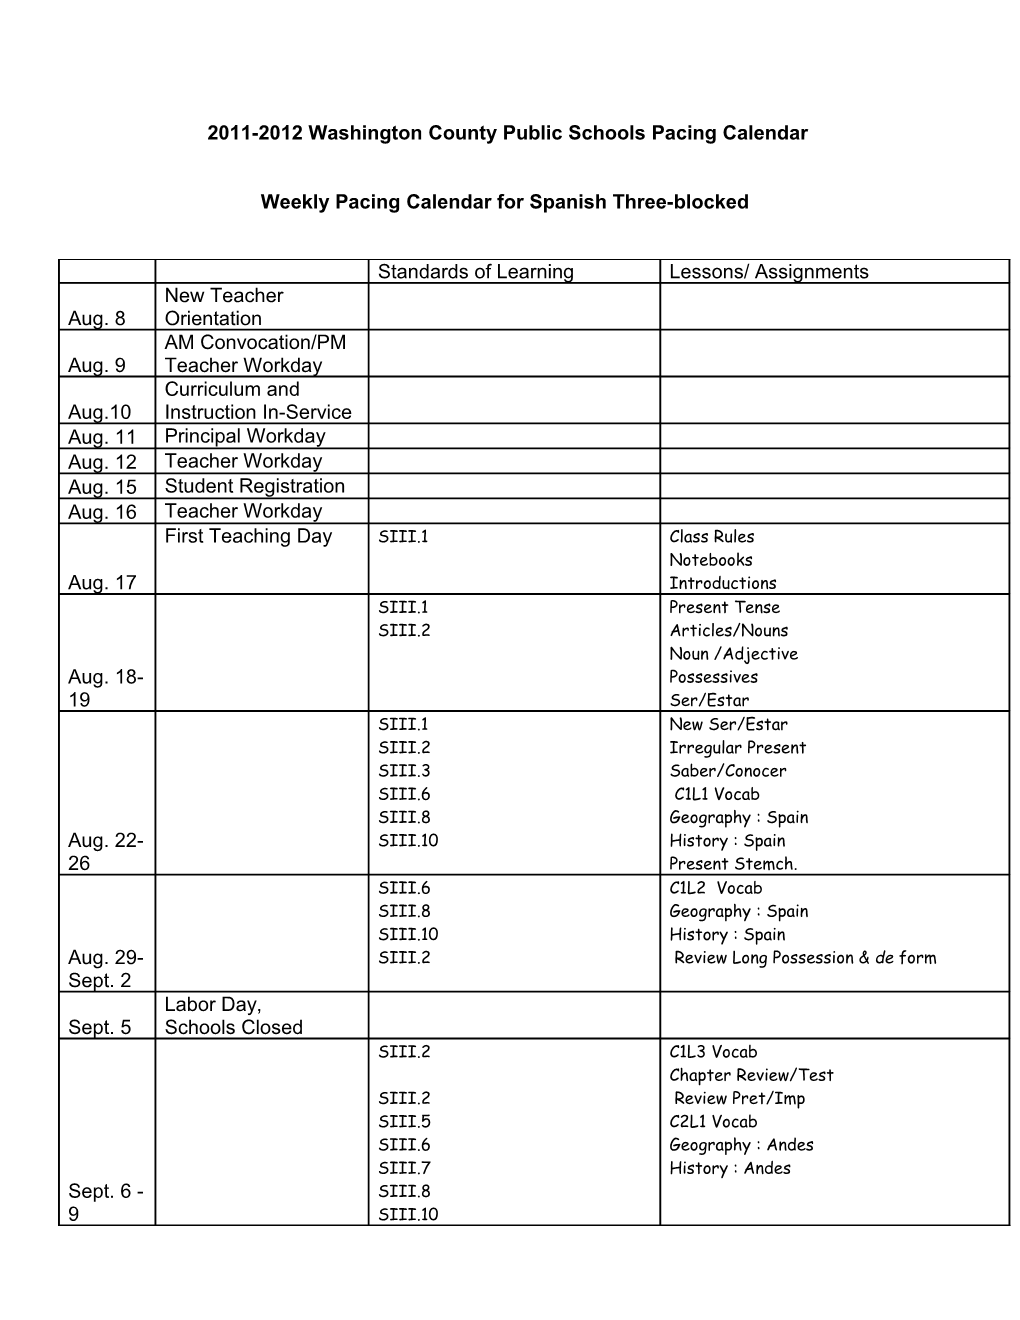 2007-2008 Washington County Public Schools Pacing Calendar